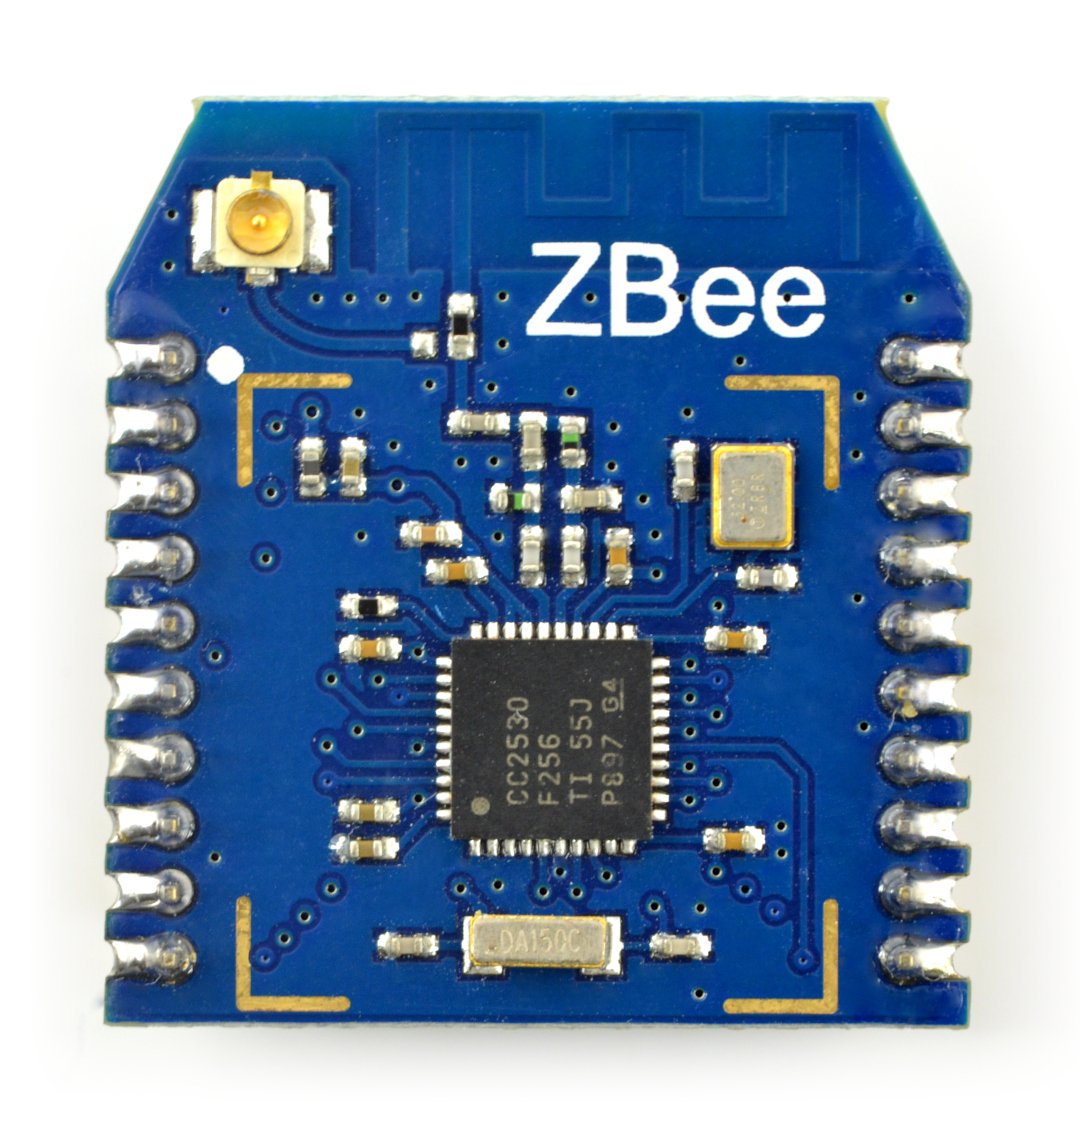 Core2530 - rádiový modul s protokolem ZigBee